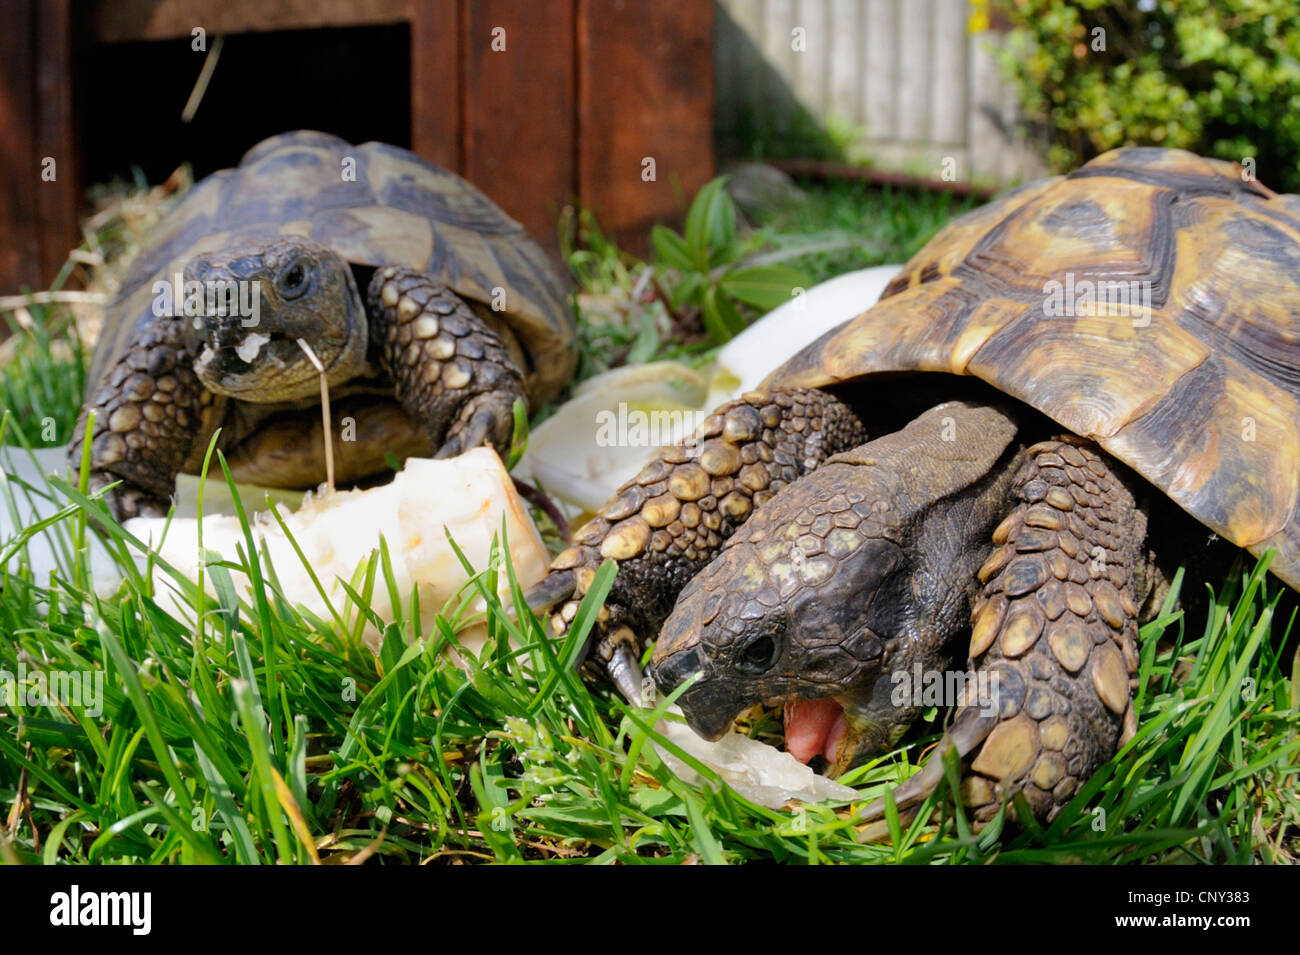 turtles feeding on saladleaves Stock Photo